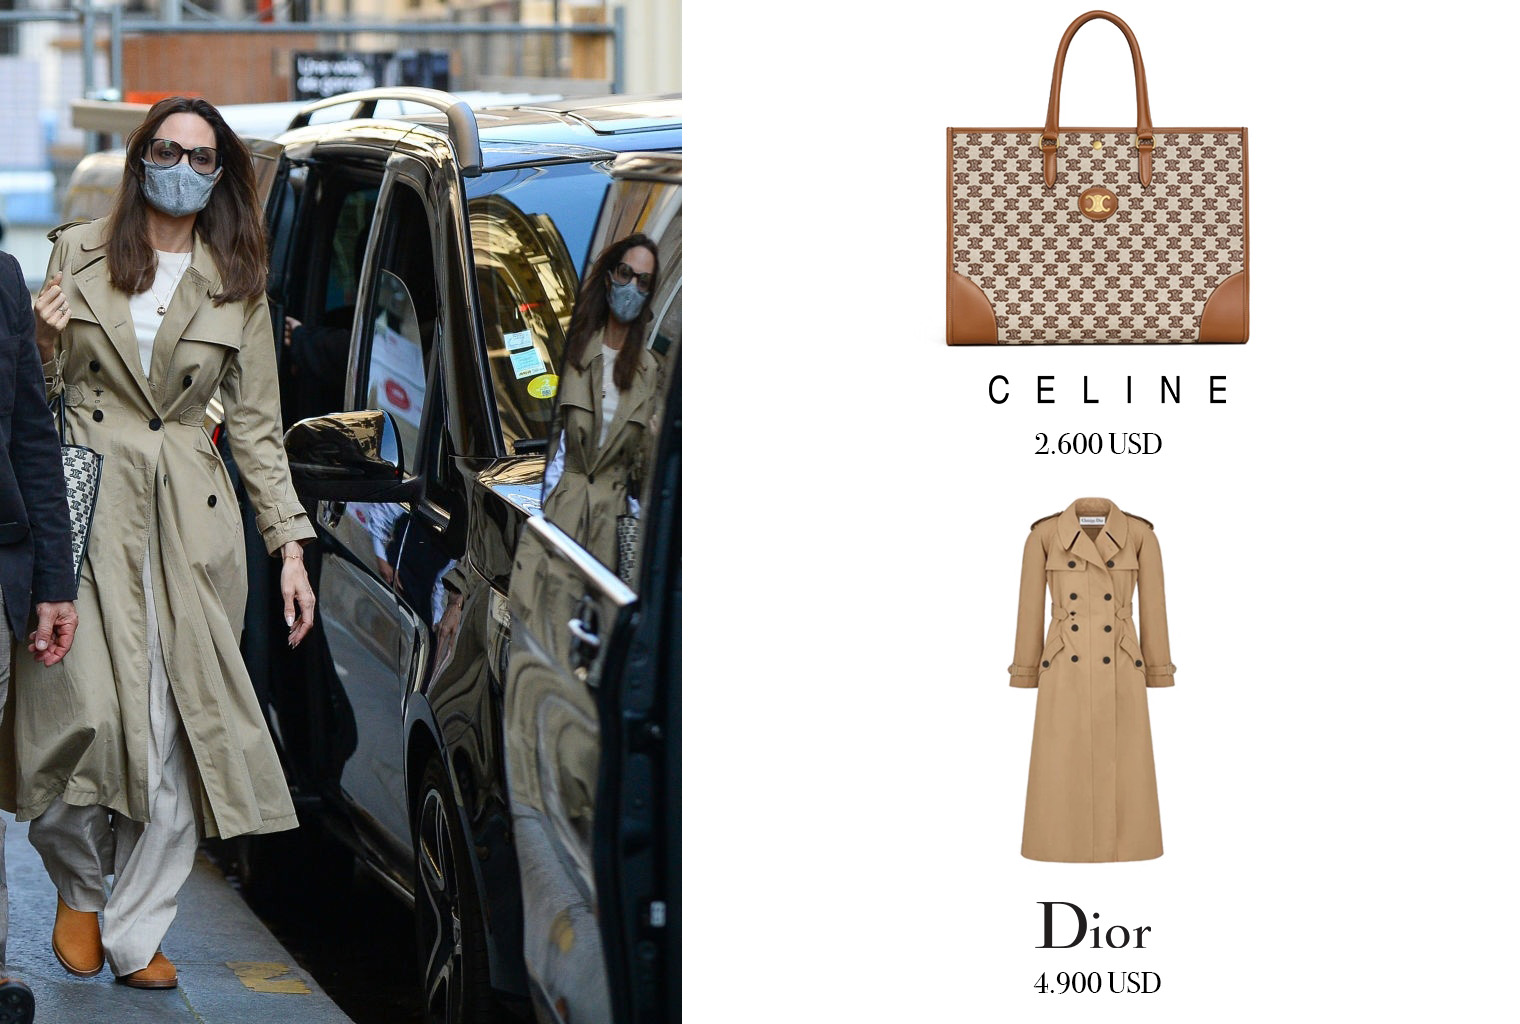 Chiếc túi Horizontal Cabas in Textile With Triomphe Embroidery bằng chất liệu canvas phối da, 2 màu beige - nâu và chiếc áo trench coat kinh điển, mang đậm dấu ấn cổ điển của Dior là 'người bạn' thời trang đồng hành cùng nữ diễn viên tại Paris.